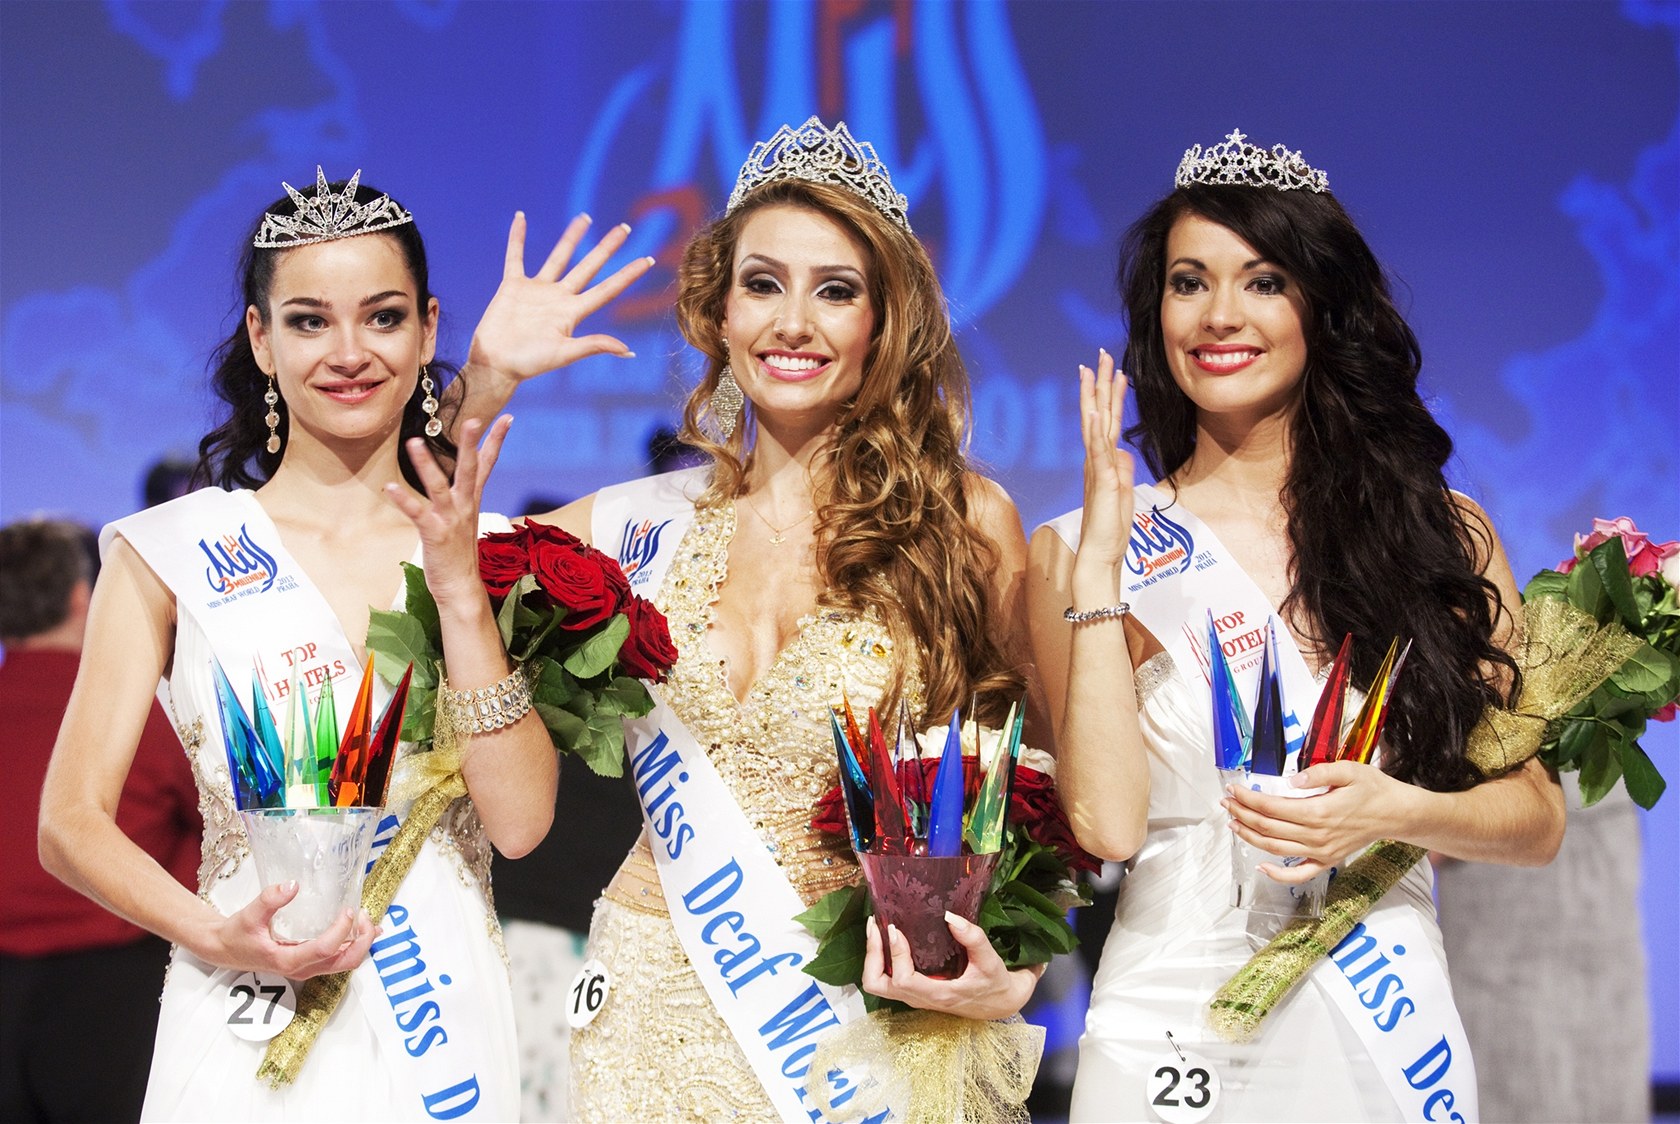 Neslyšící miss 2013 je Brazilka Thaisy Payová, druhá skončila Slovenka Erika Ďuricová a třetí Queval Marianneová z Francie.